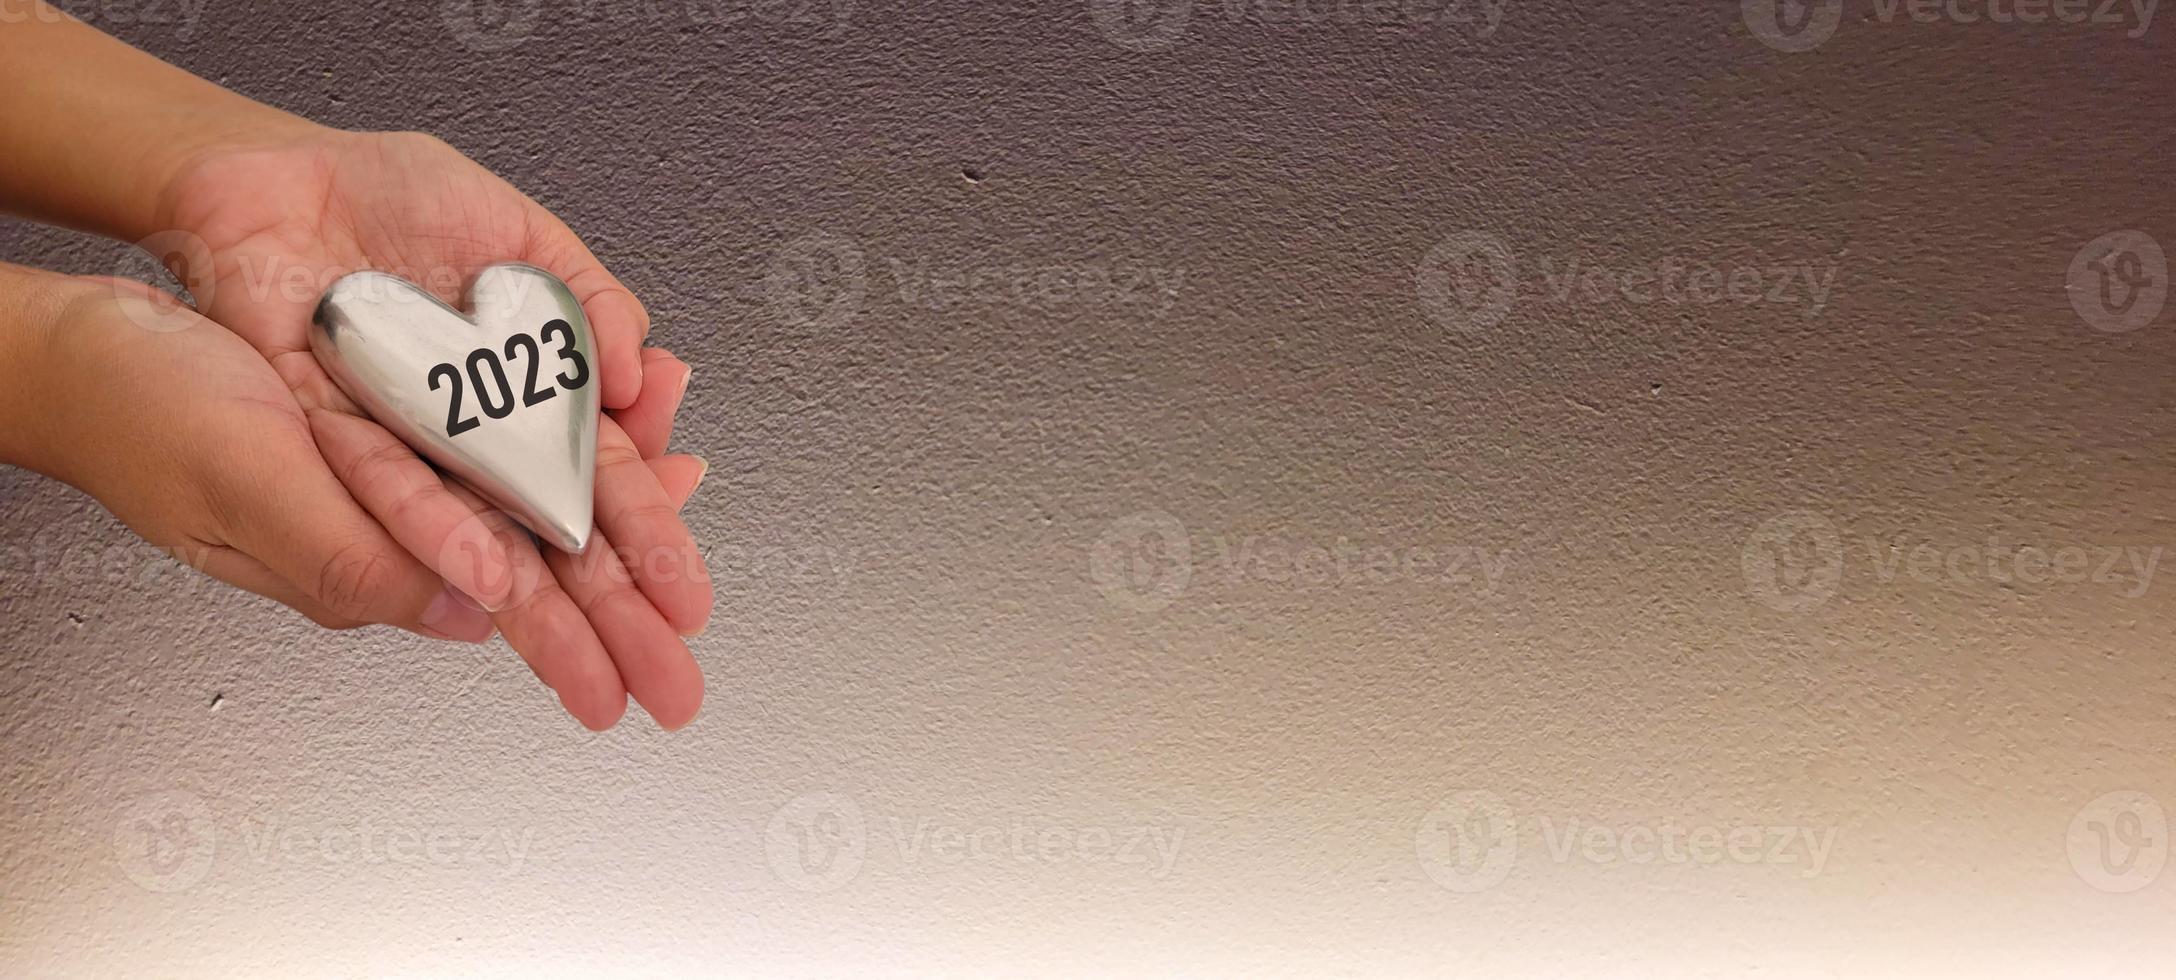 mano sosteniendo corazón 2023 vista superior y fondo blanco con sombra foto